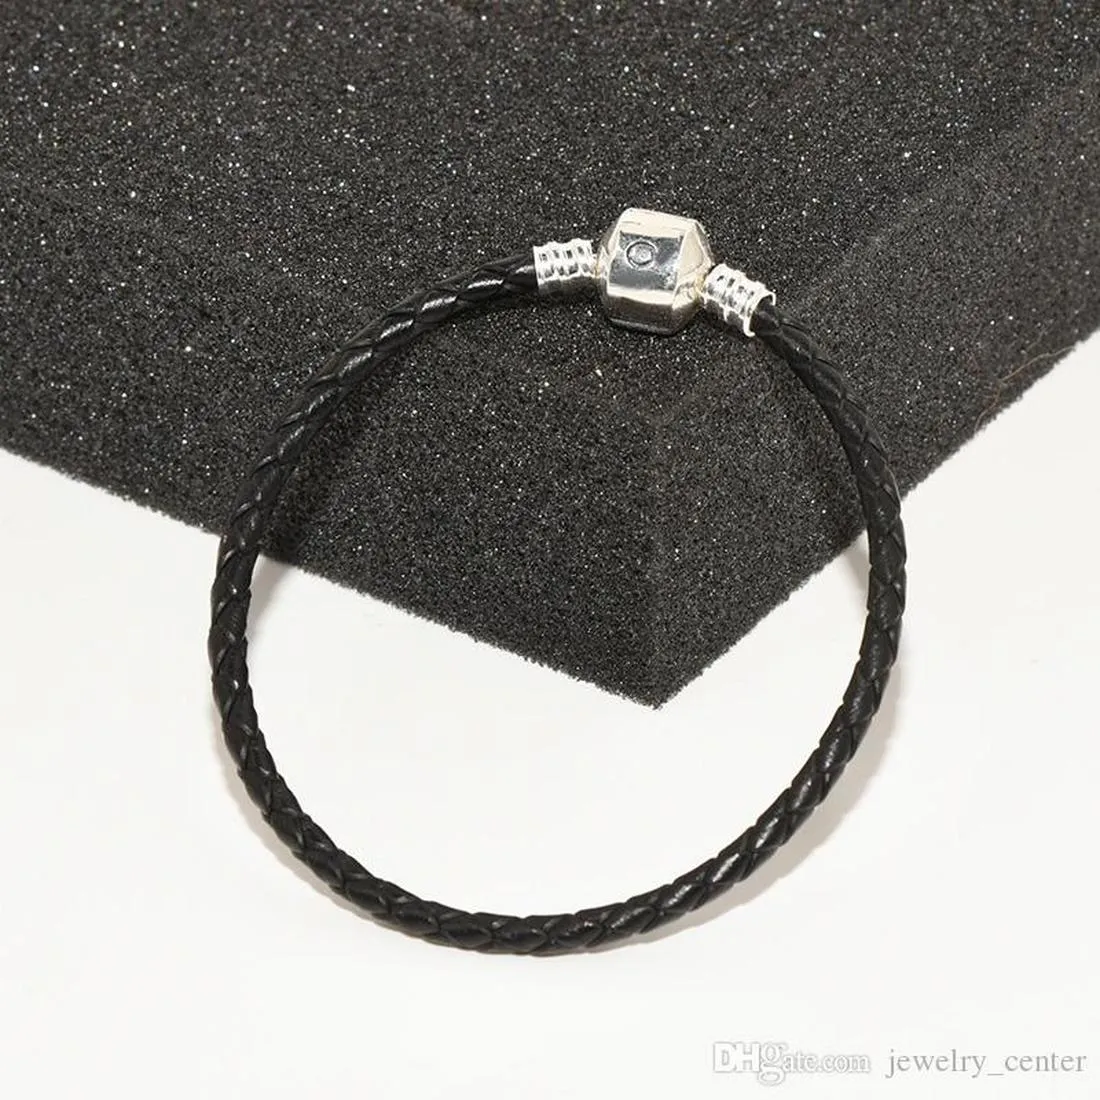 Bijoux de créateur Bracelet en argent 925 Charm Perle fit Pandora Chaîne à main en cuir noir Bracelets coulissants Perles Charmes de style européen Perlé Murano